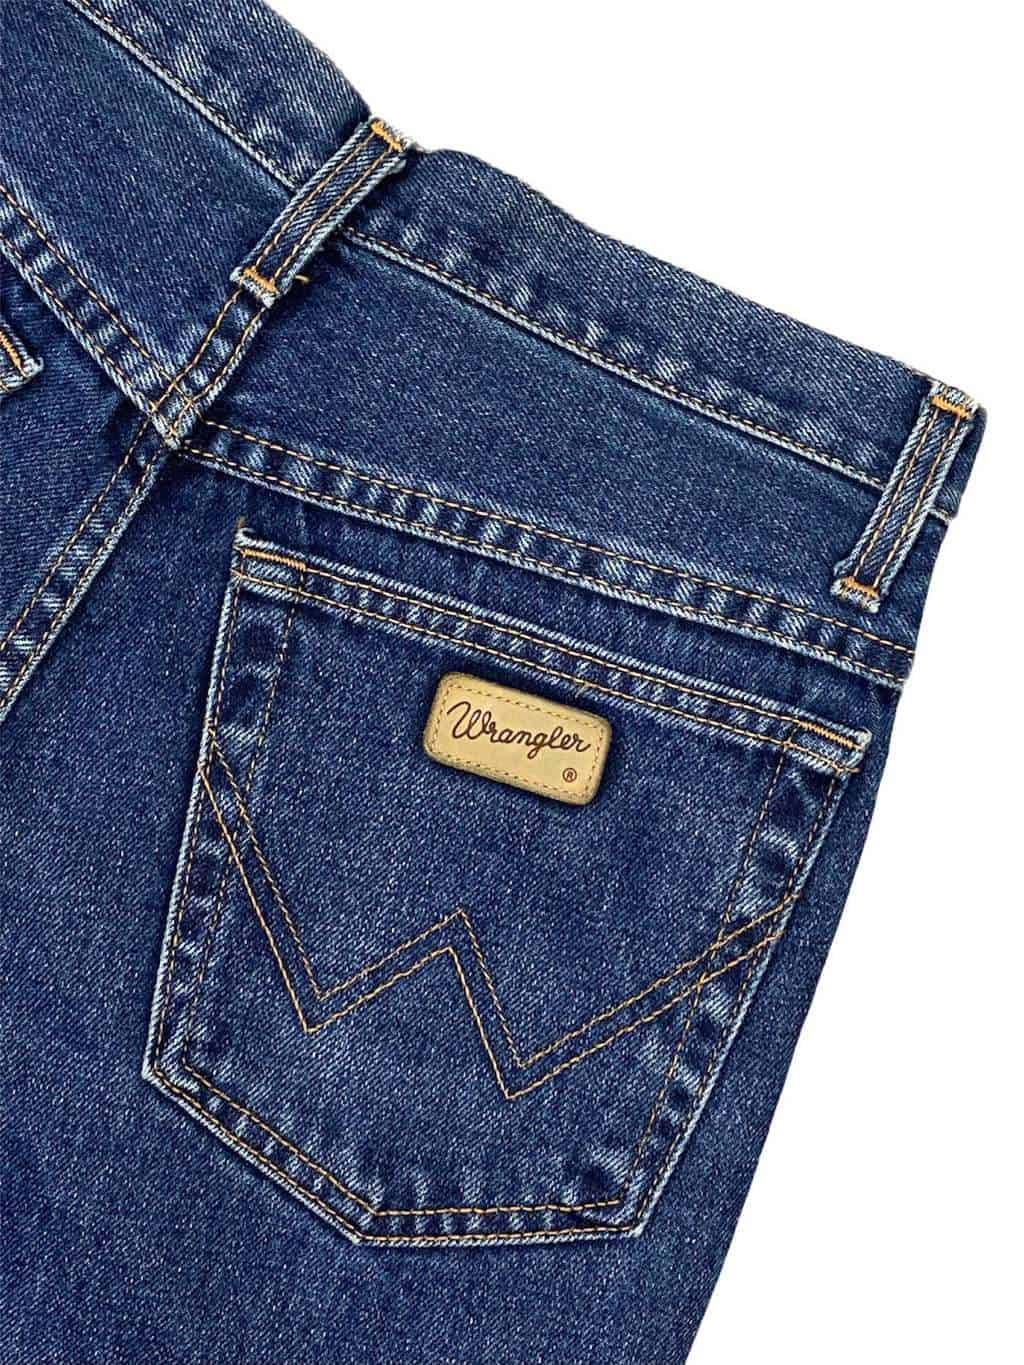 Vintage 90s Wrangler 'Monterey' straight leg jeans in dark blue denim - W30  x  - St Cyr Vintage